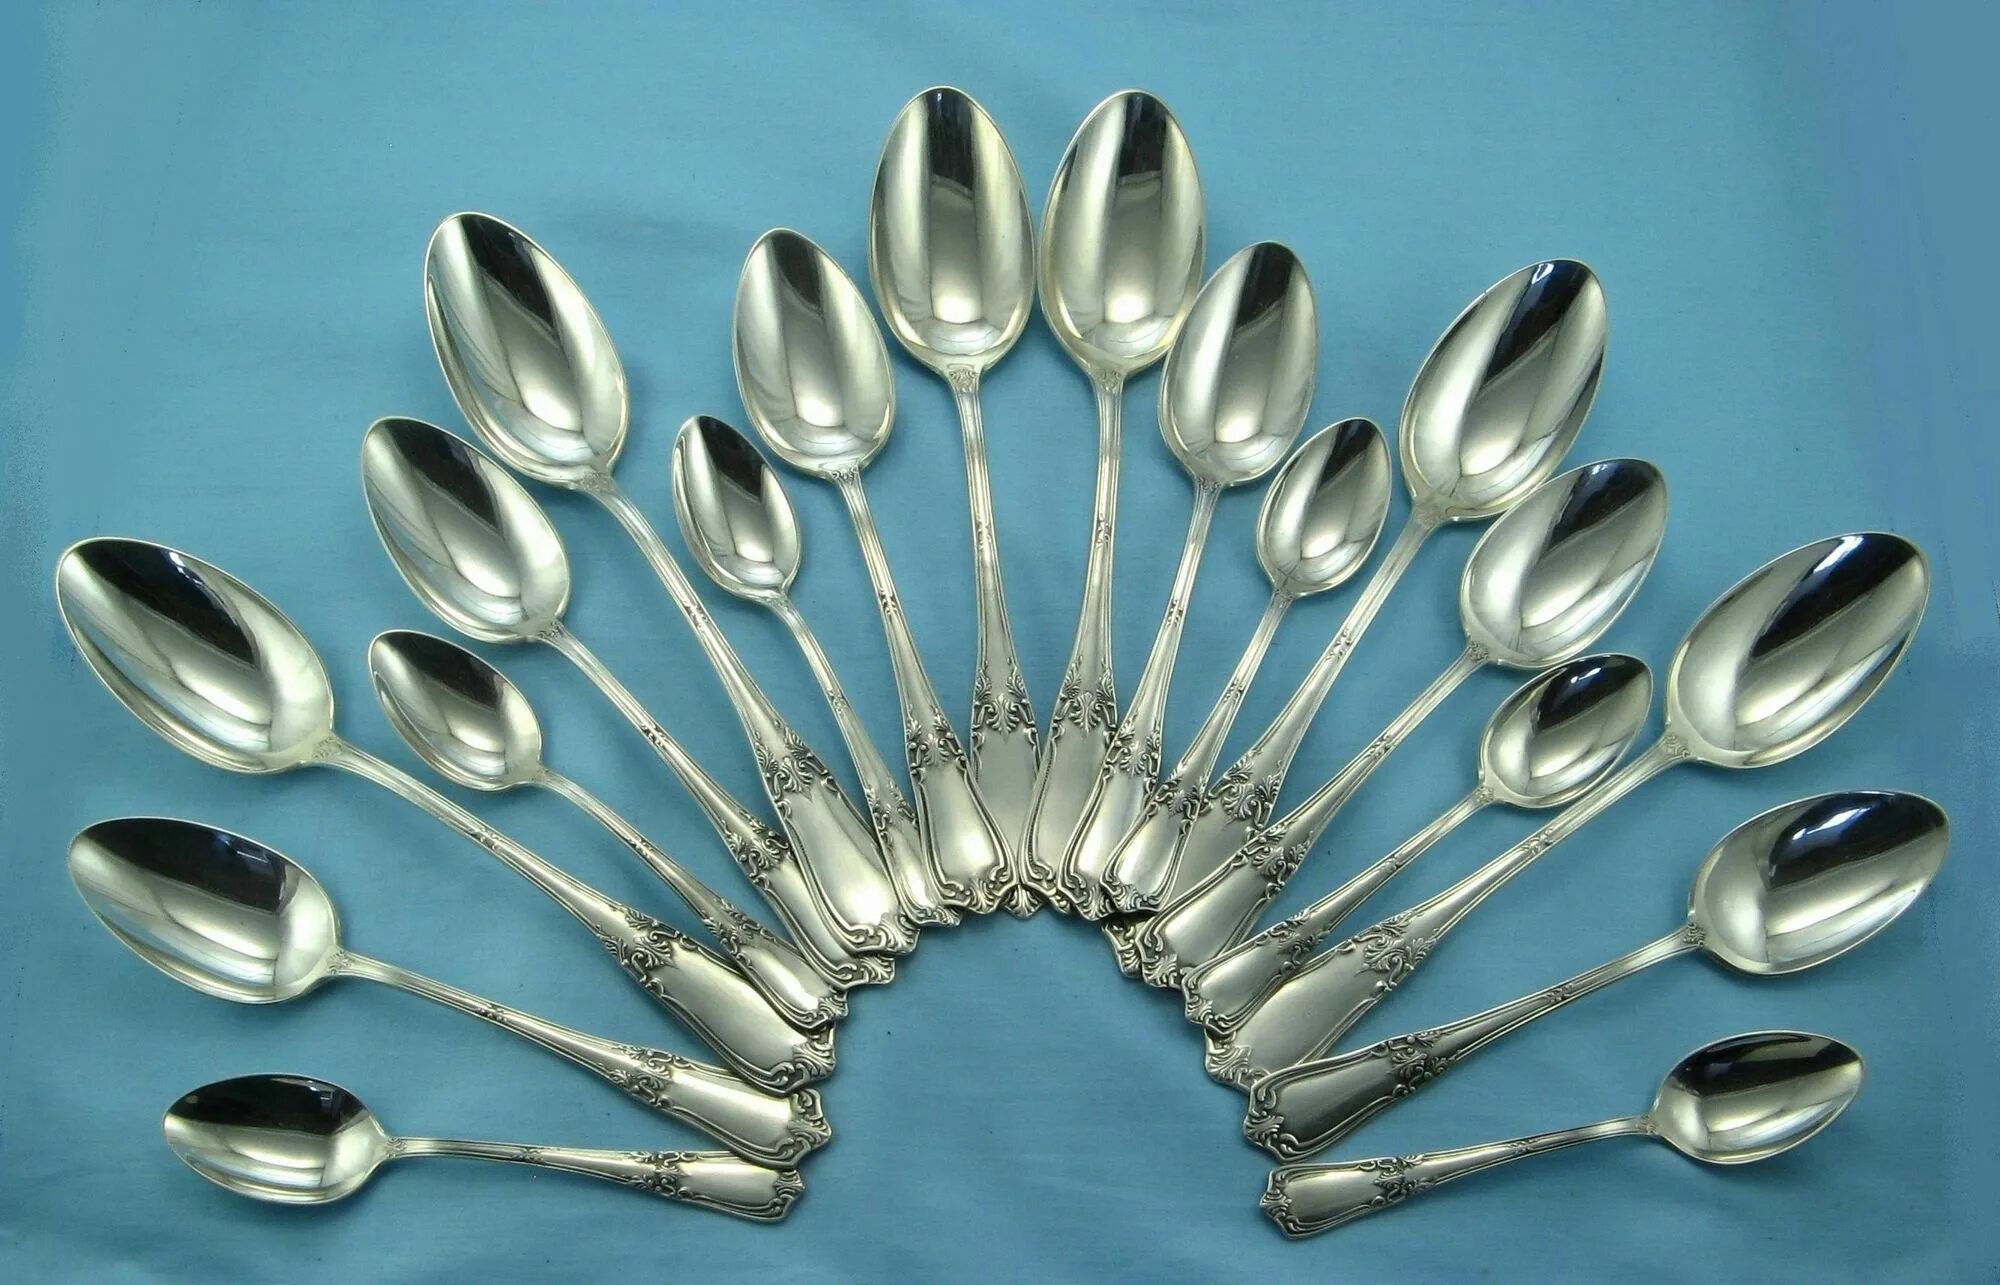 Столовое серебро. Столовые приборы из серебра советского периода. Итальянские производители серебряной посуды. Столовое серебро реклама.